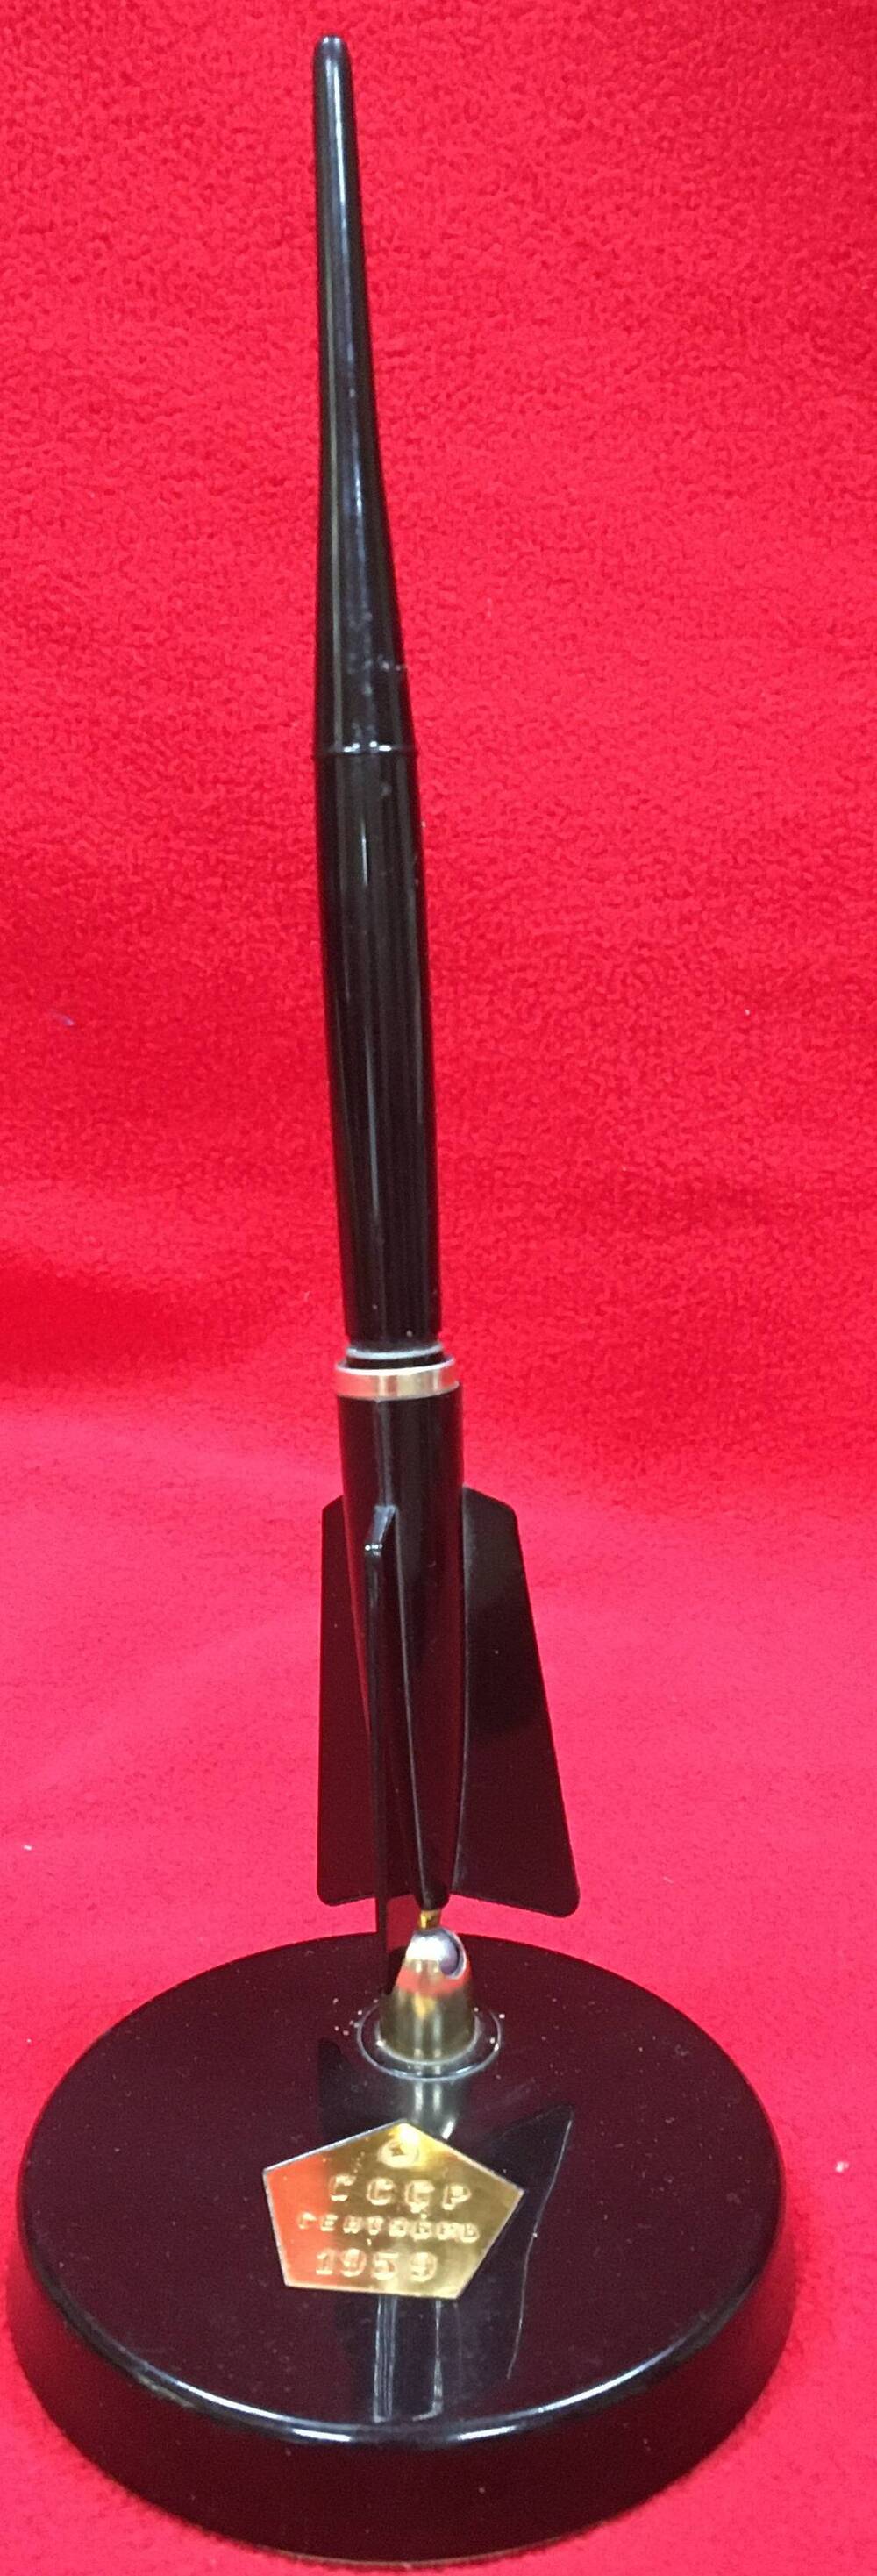 Канцелярский прибор:подставка под ручку в форме ракеты,чернильная ручка